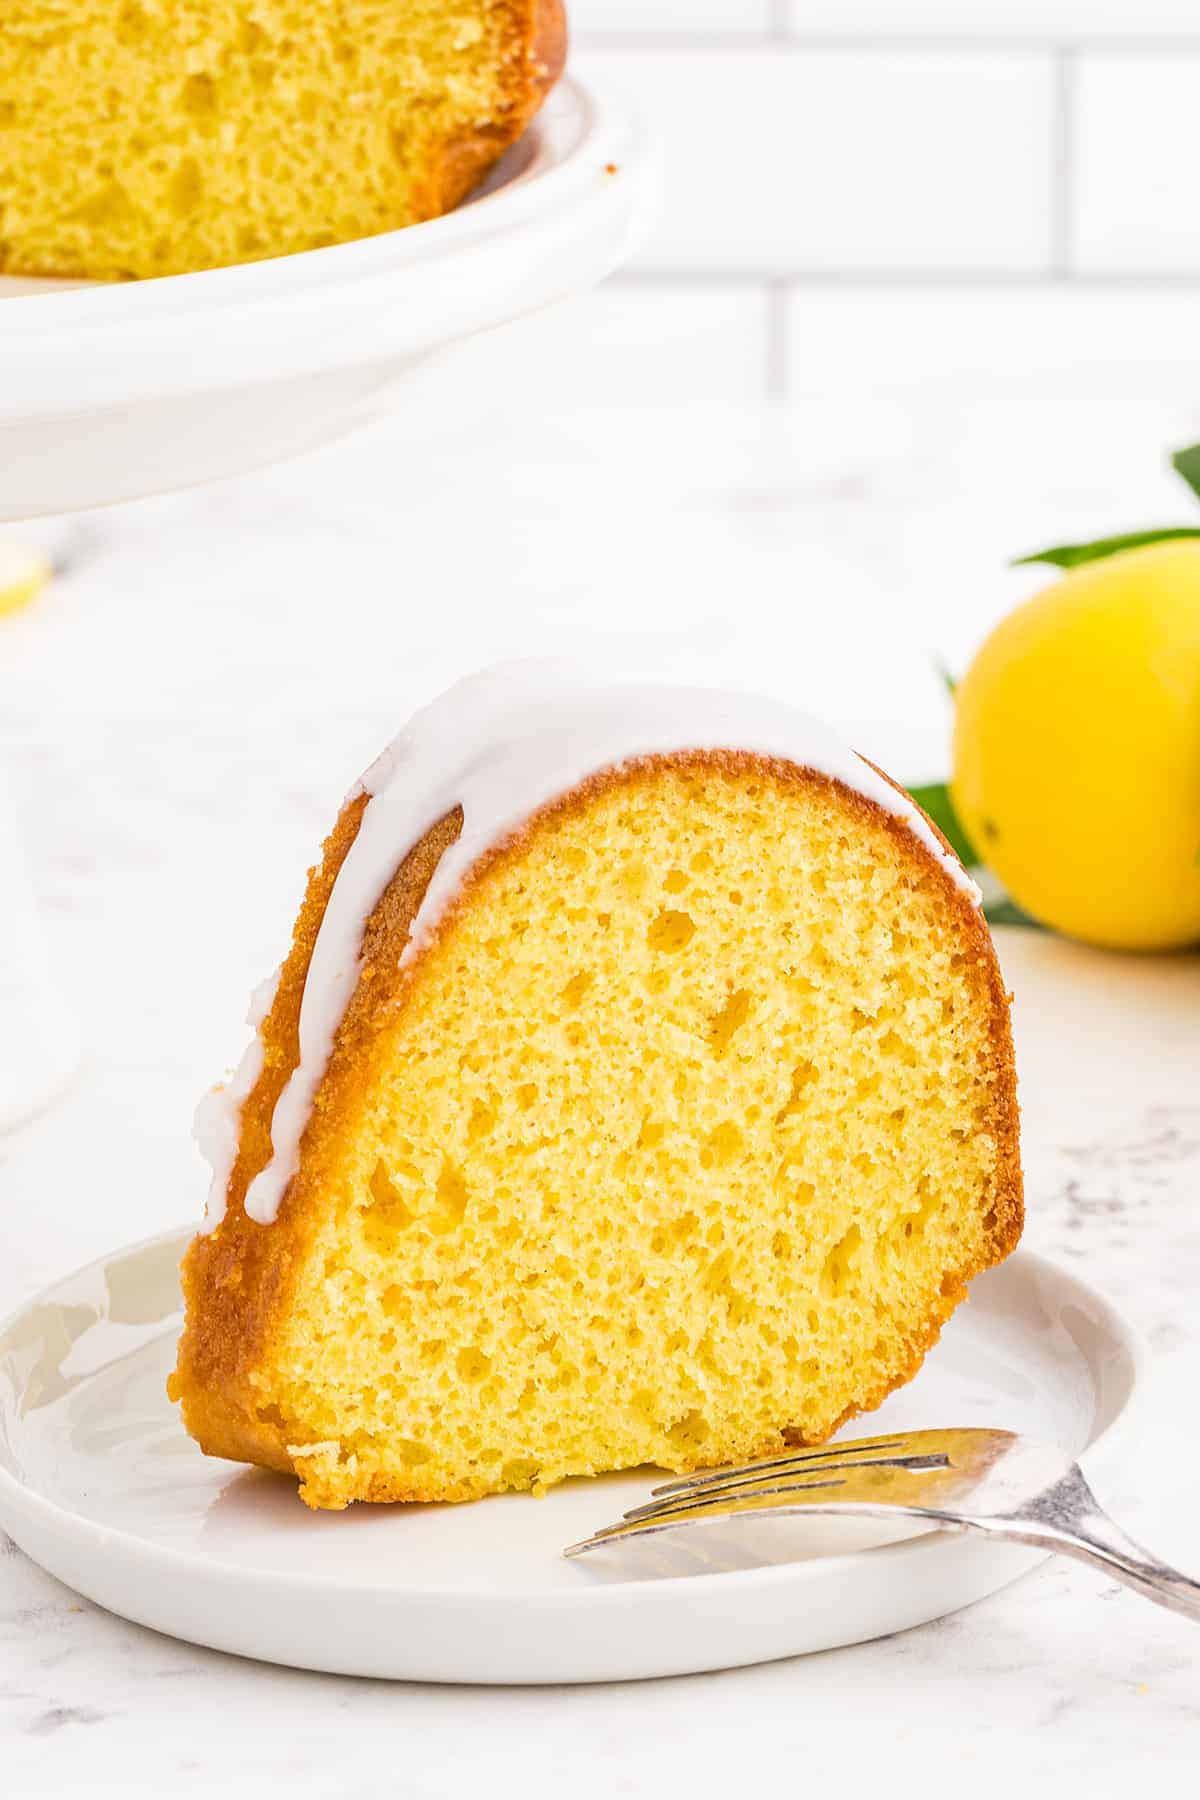 slice of lemon bundt cake on white plate.